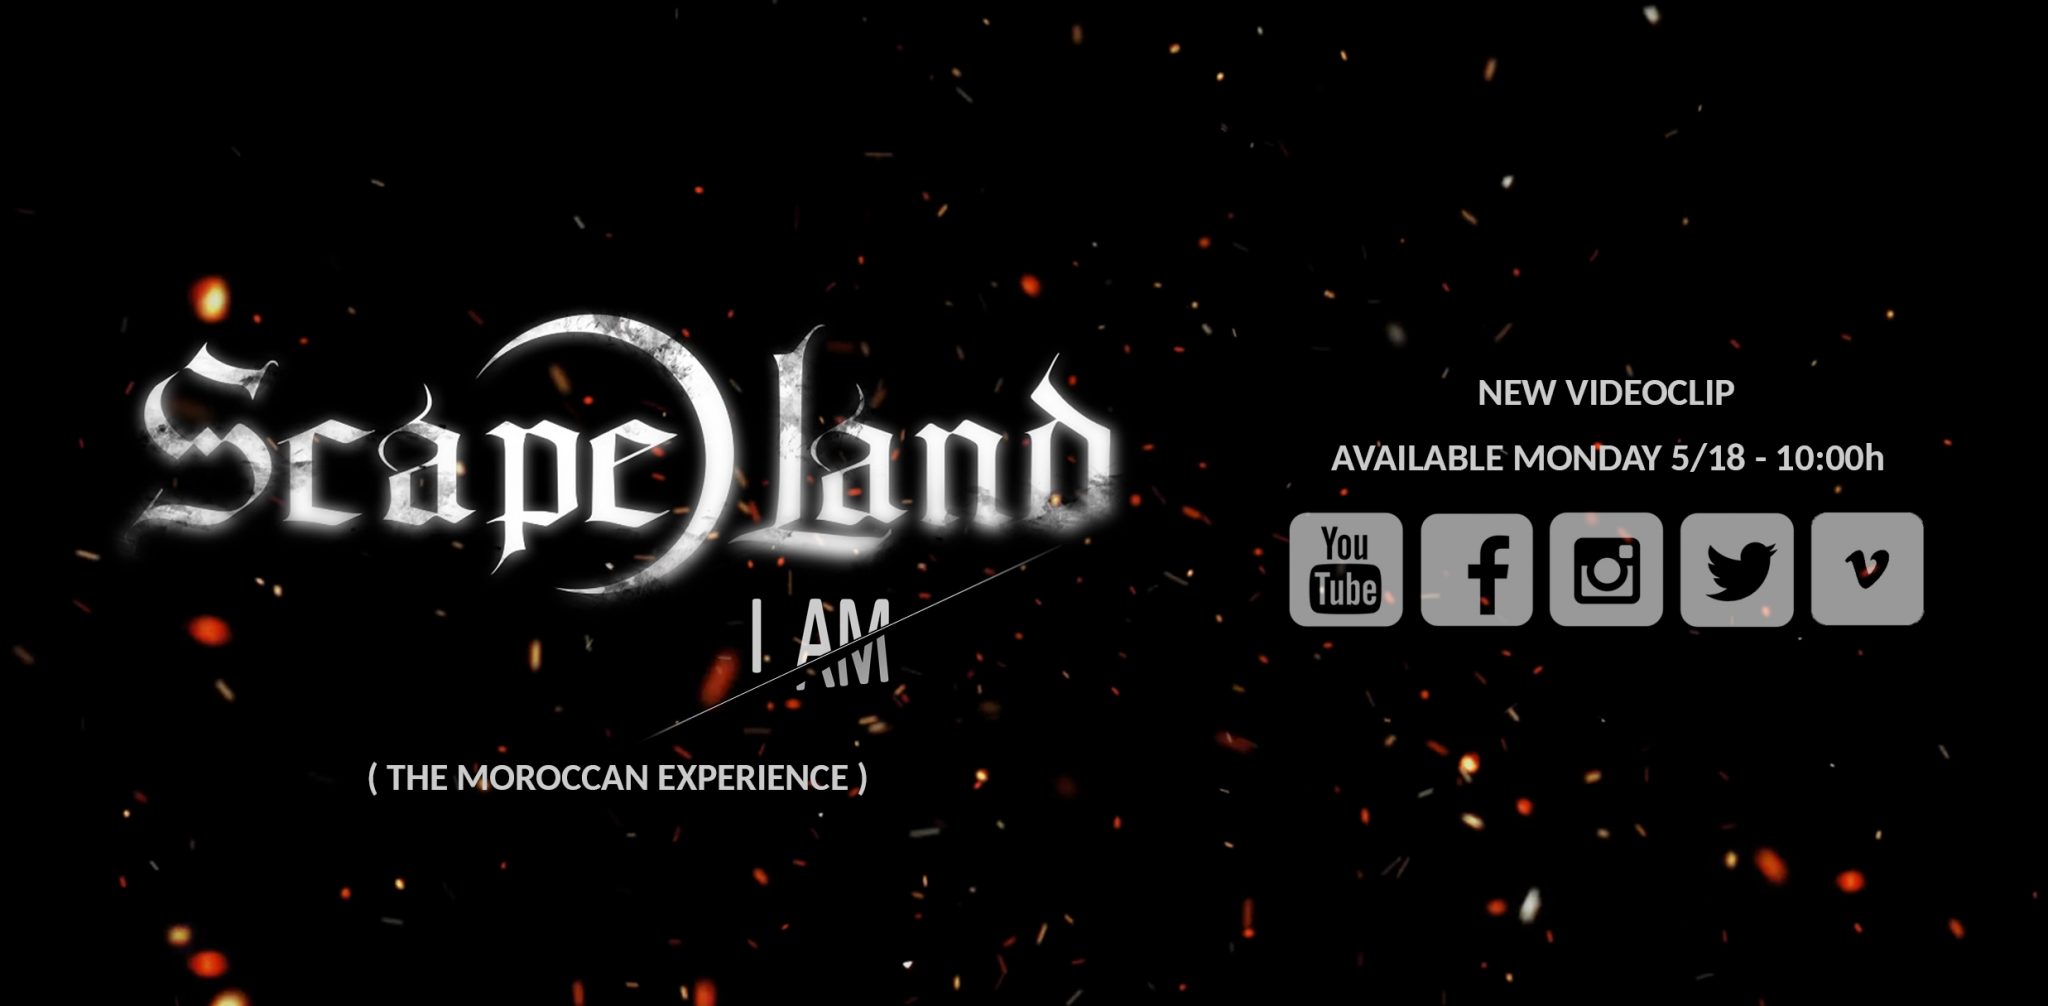 Nuevo videoclip de Scape Land – «I am» – The Moroccan Experience